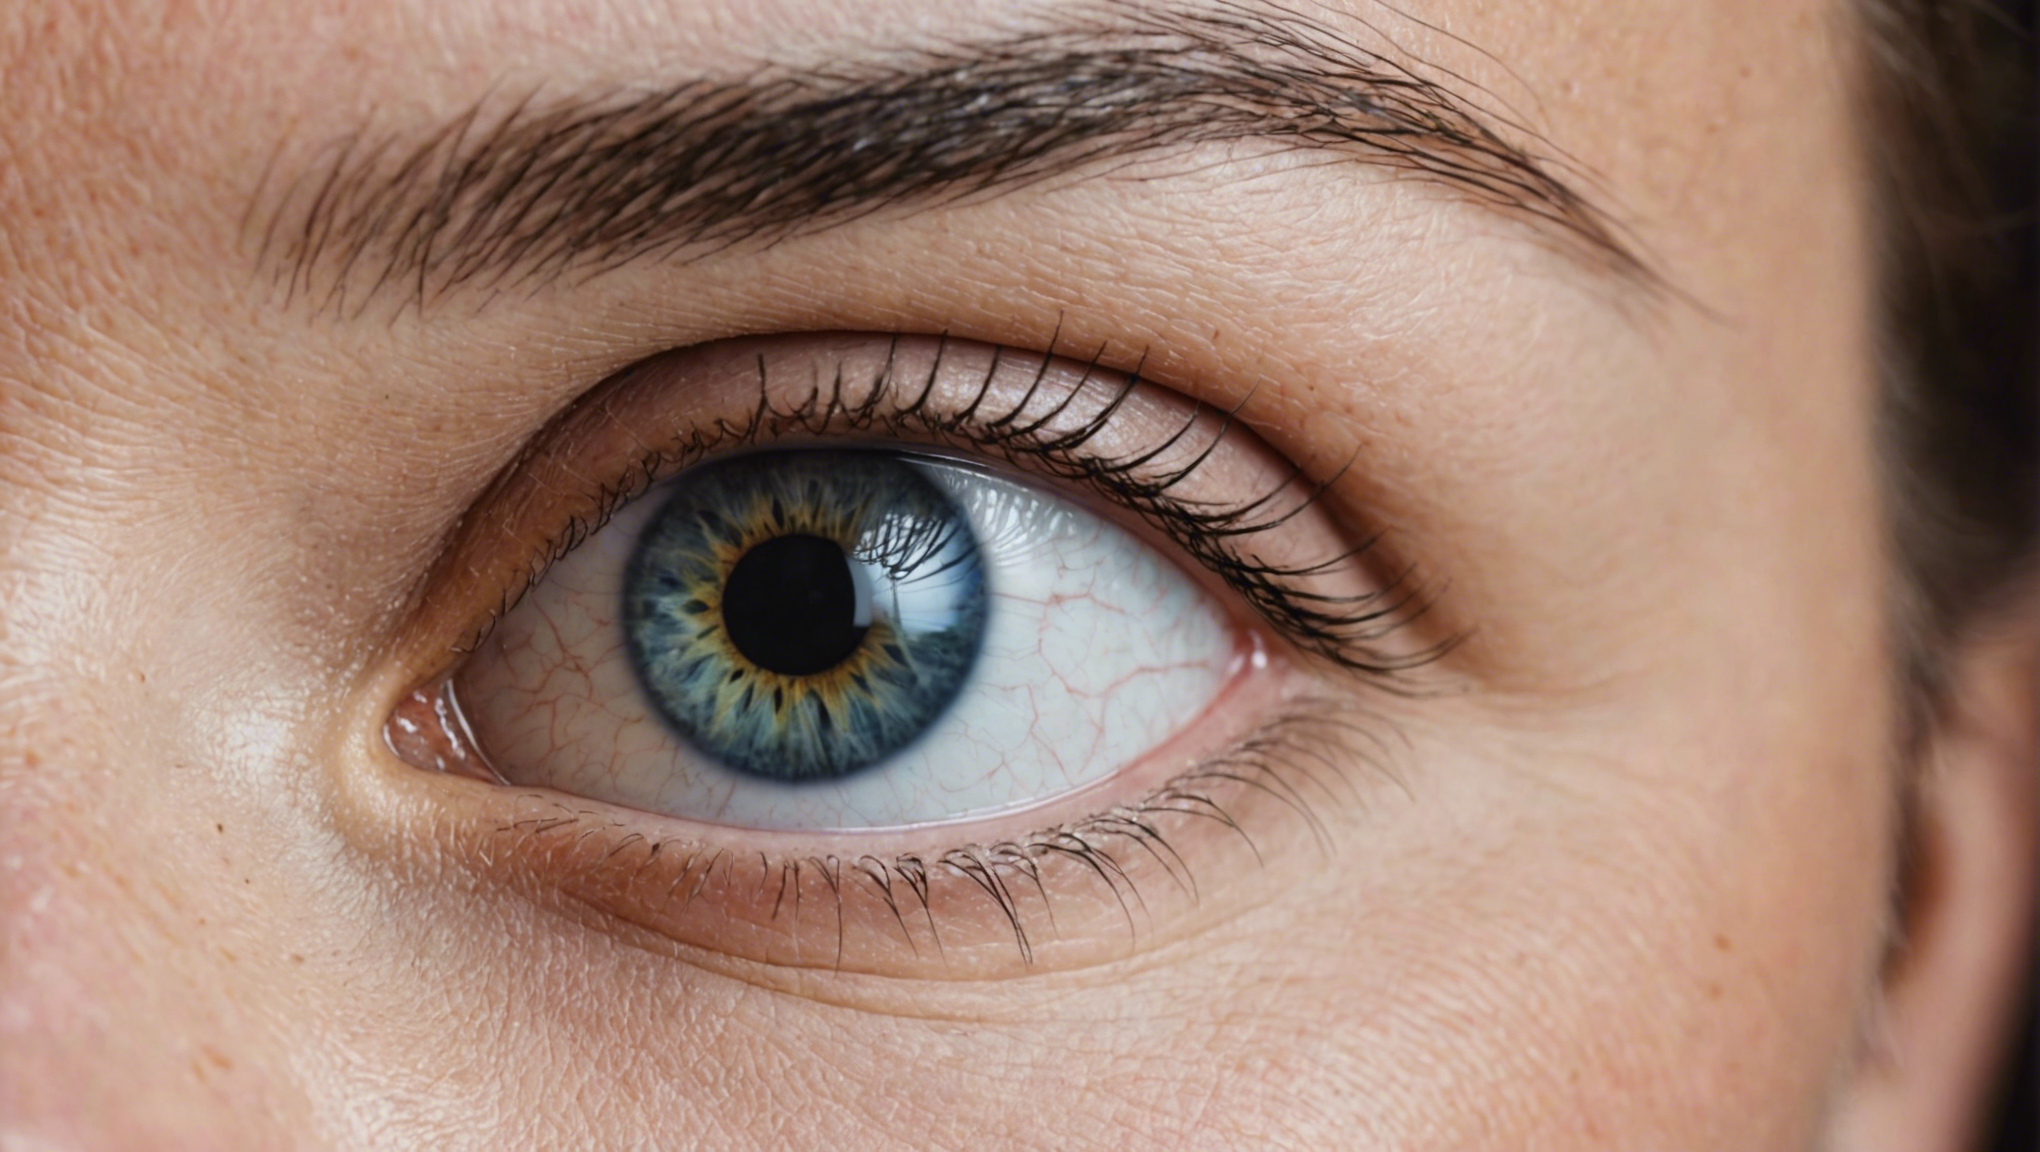 découvrez les critères d'éligibilité pour la chirurgie des yeux et prenez rendez-vous pour retrouver une vision claire et nette.